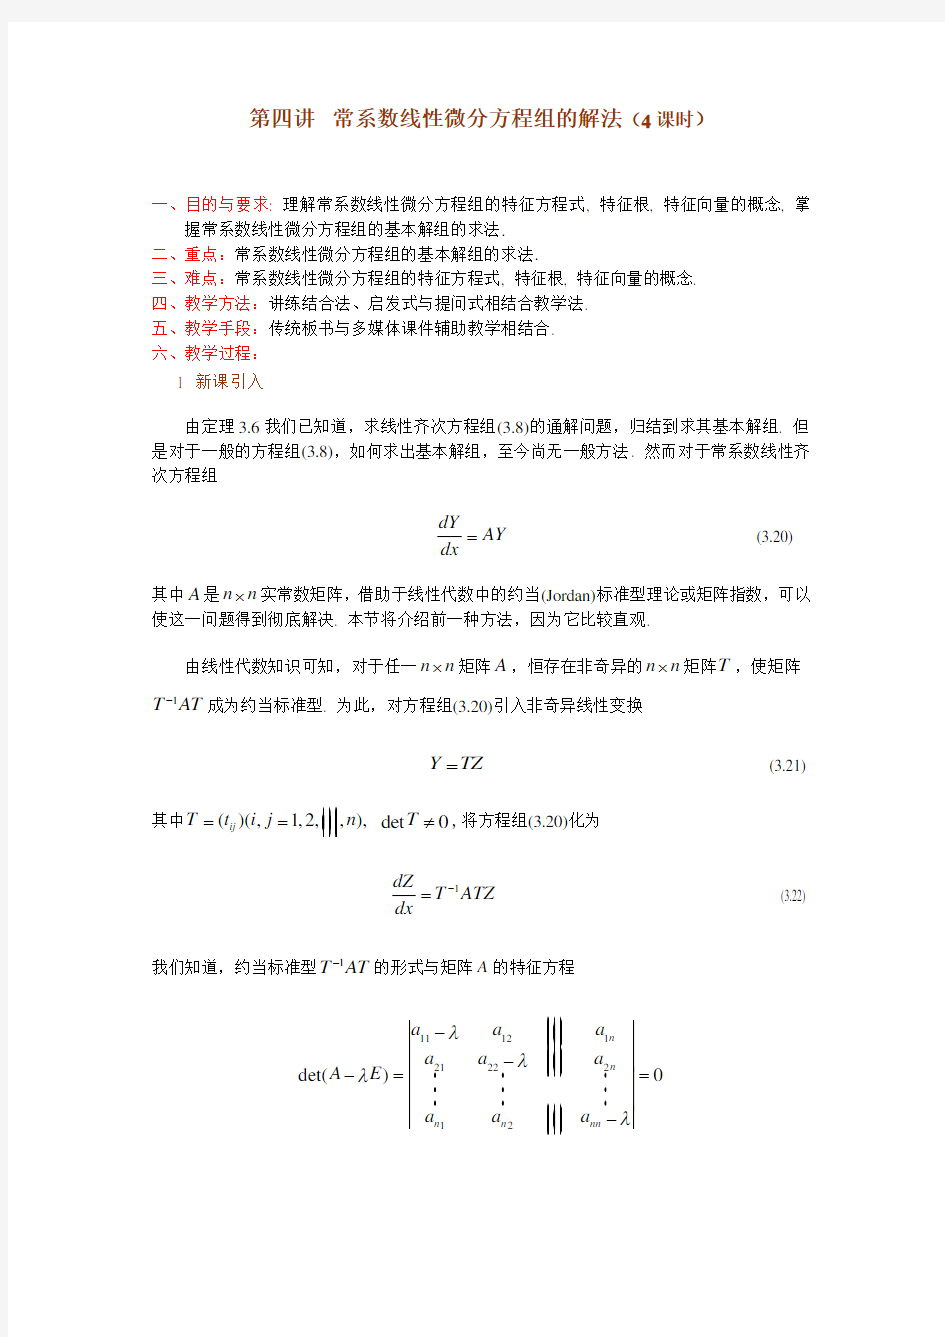 第三章一阶线性微分方程组第四讲常系数线性微分方程组的解法 